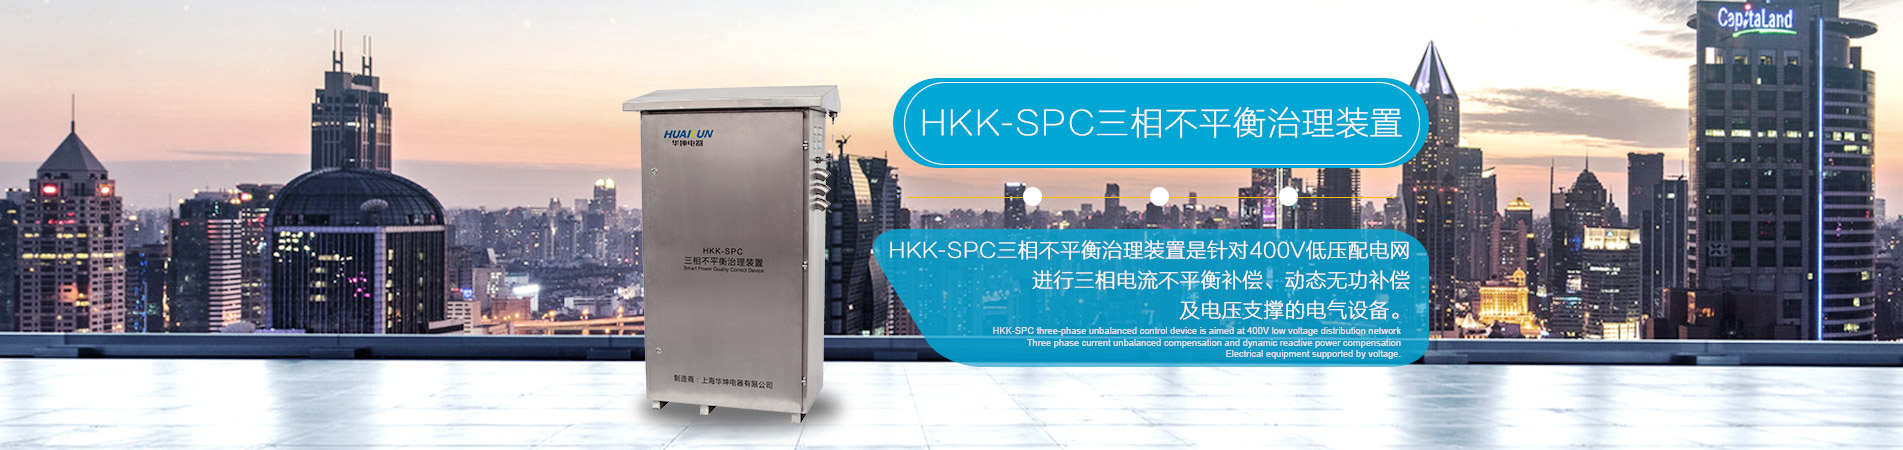 HKK-SPC三相不平衡治理装置